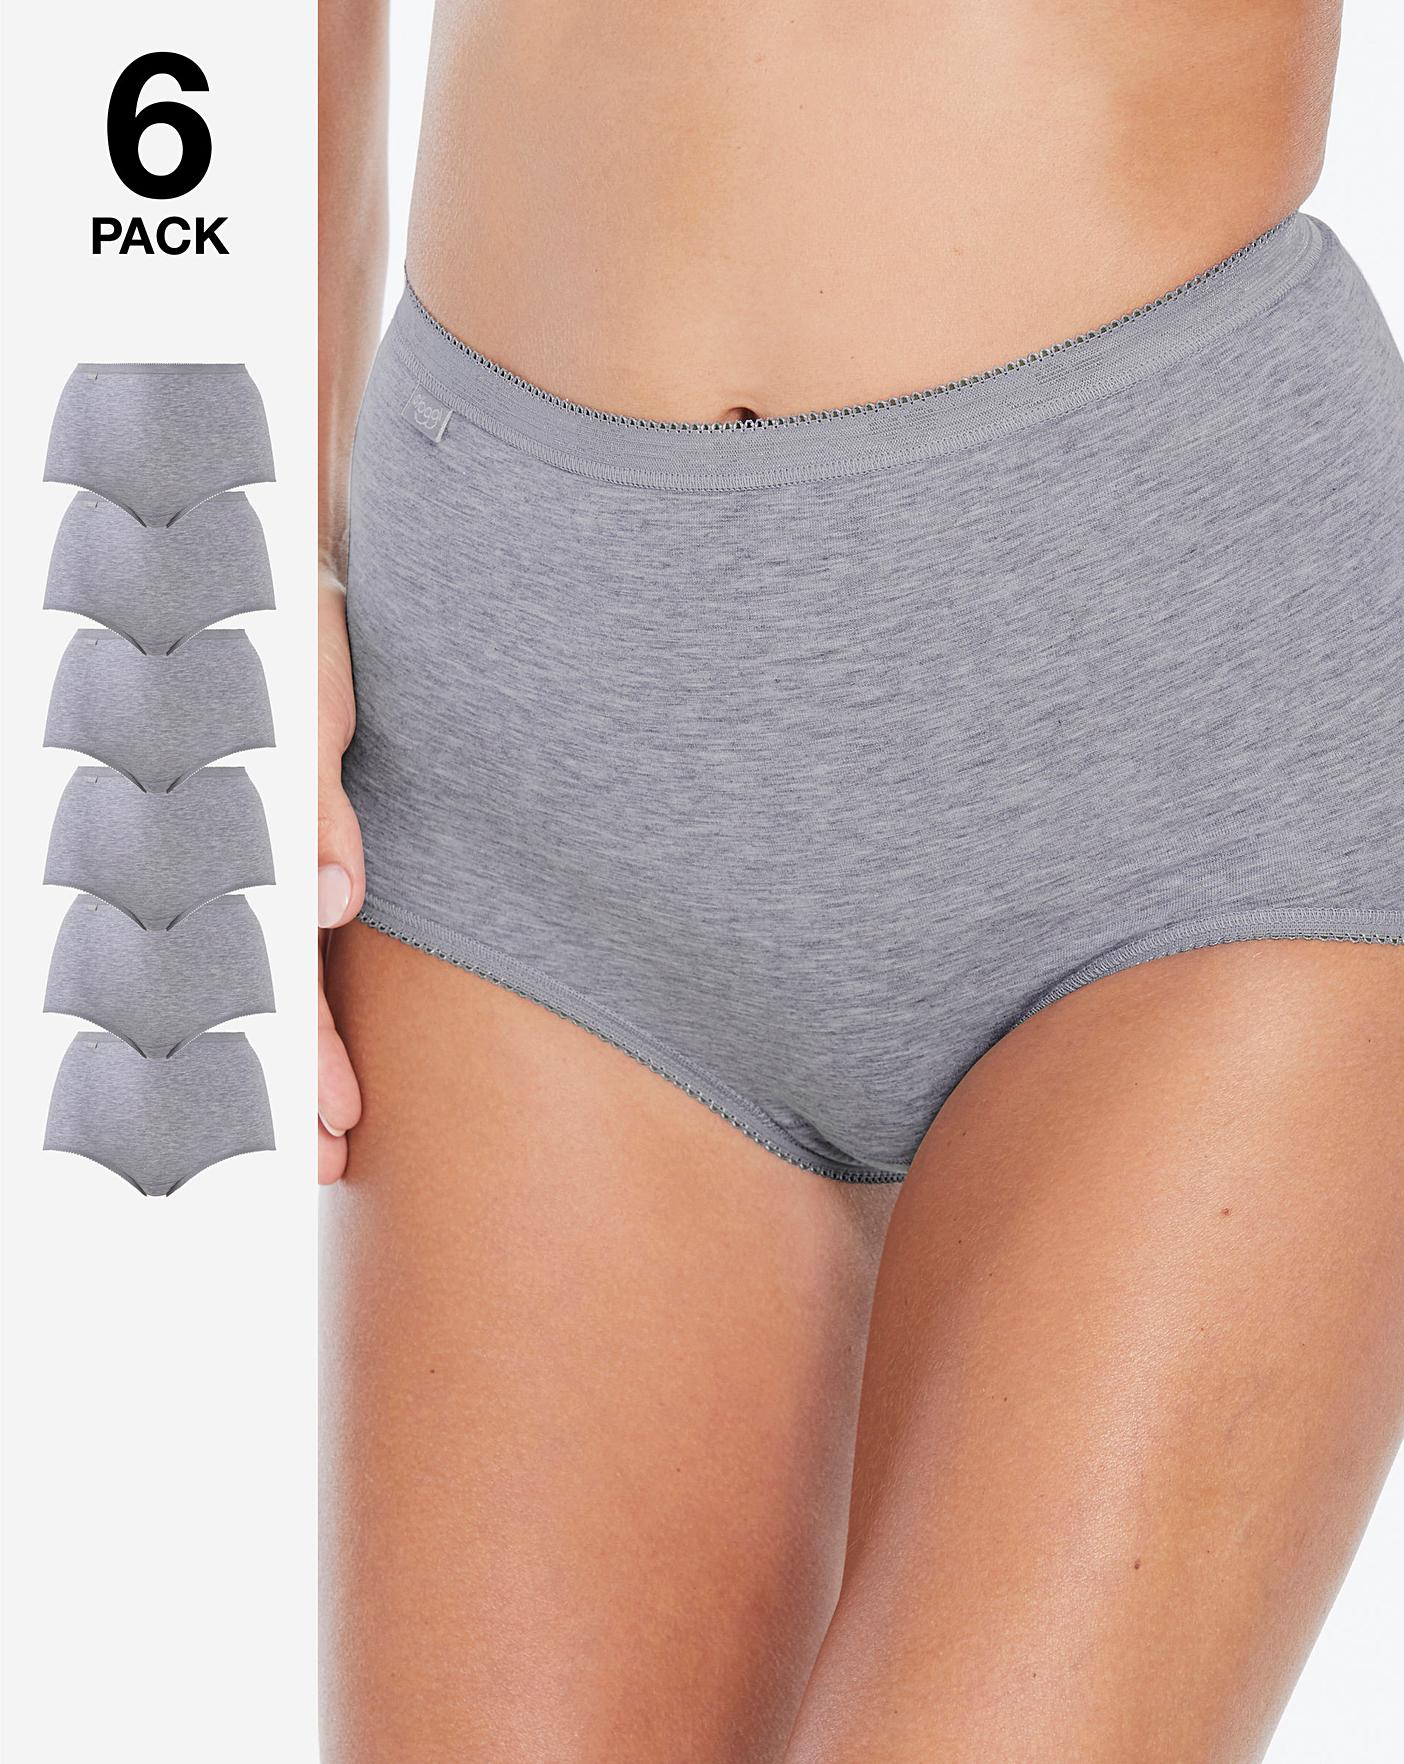 Essentials Women's Cotton High Waisted Underwear, Pack of 6